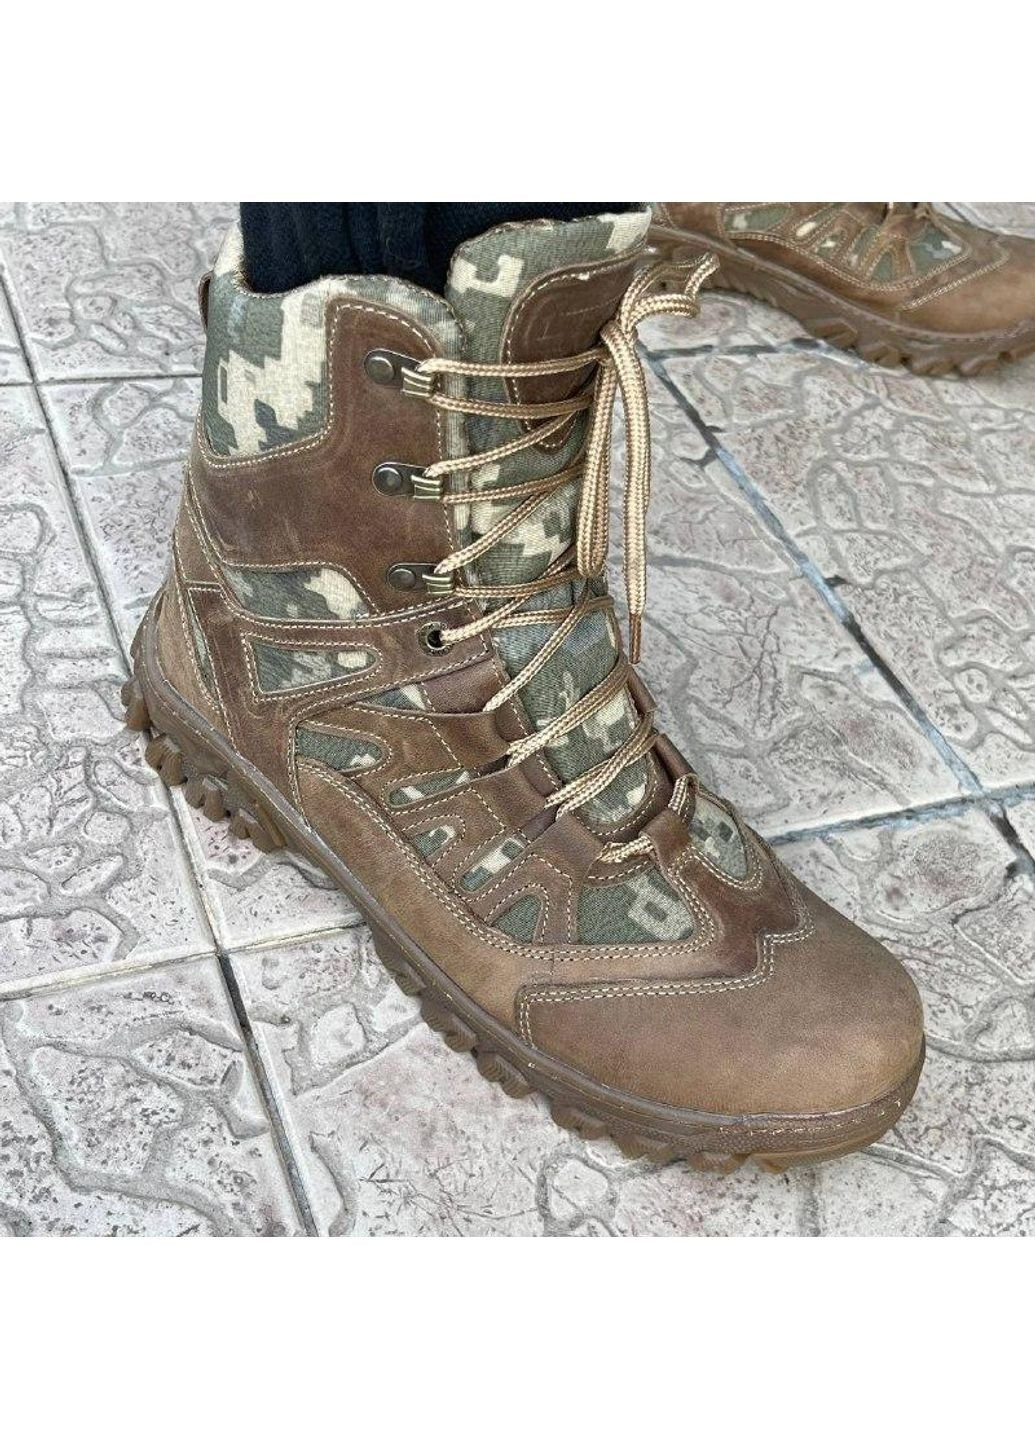 Коричневые летние ботинки летние тактические всу 6556 40 р 26 см коричневые KNF